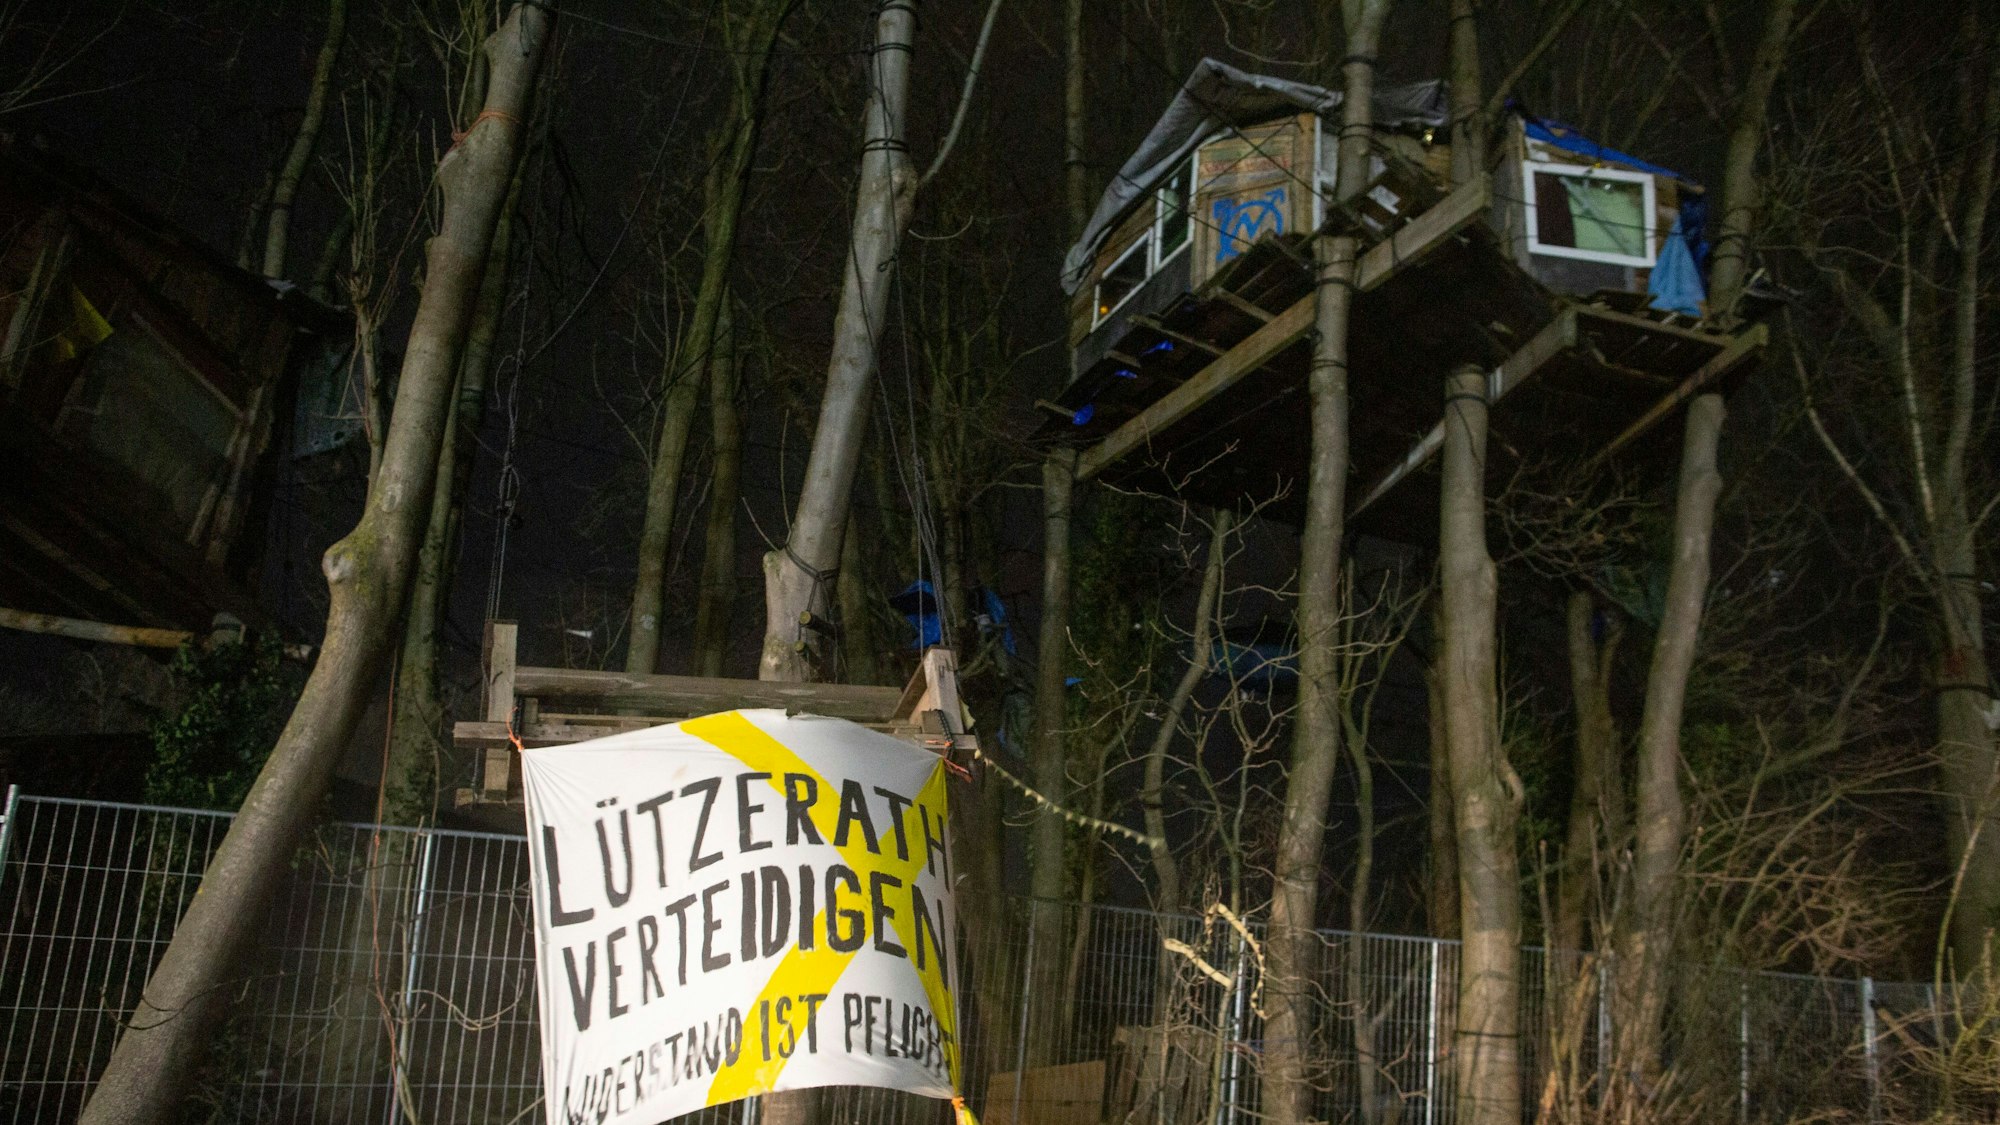 Am Donnerstagmorgen weilen immer noch zahlreiche Aktivisten in Lützerath, unter anderem in Baumhäusern, die die Polizei nur mit großem Aufwand geräumt bekommt.